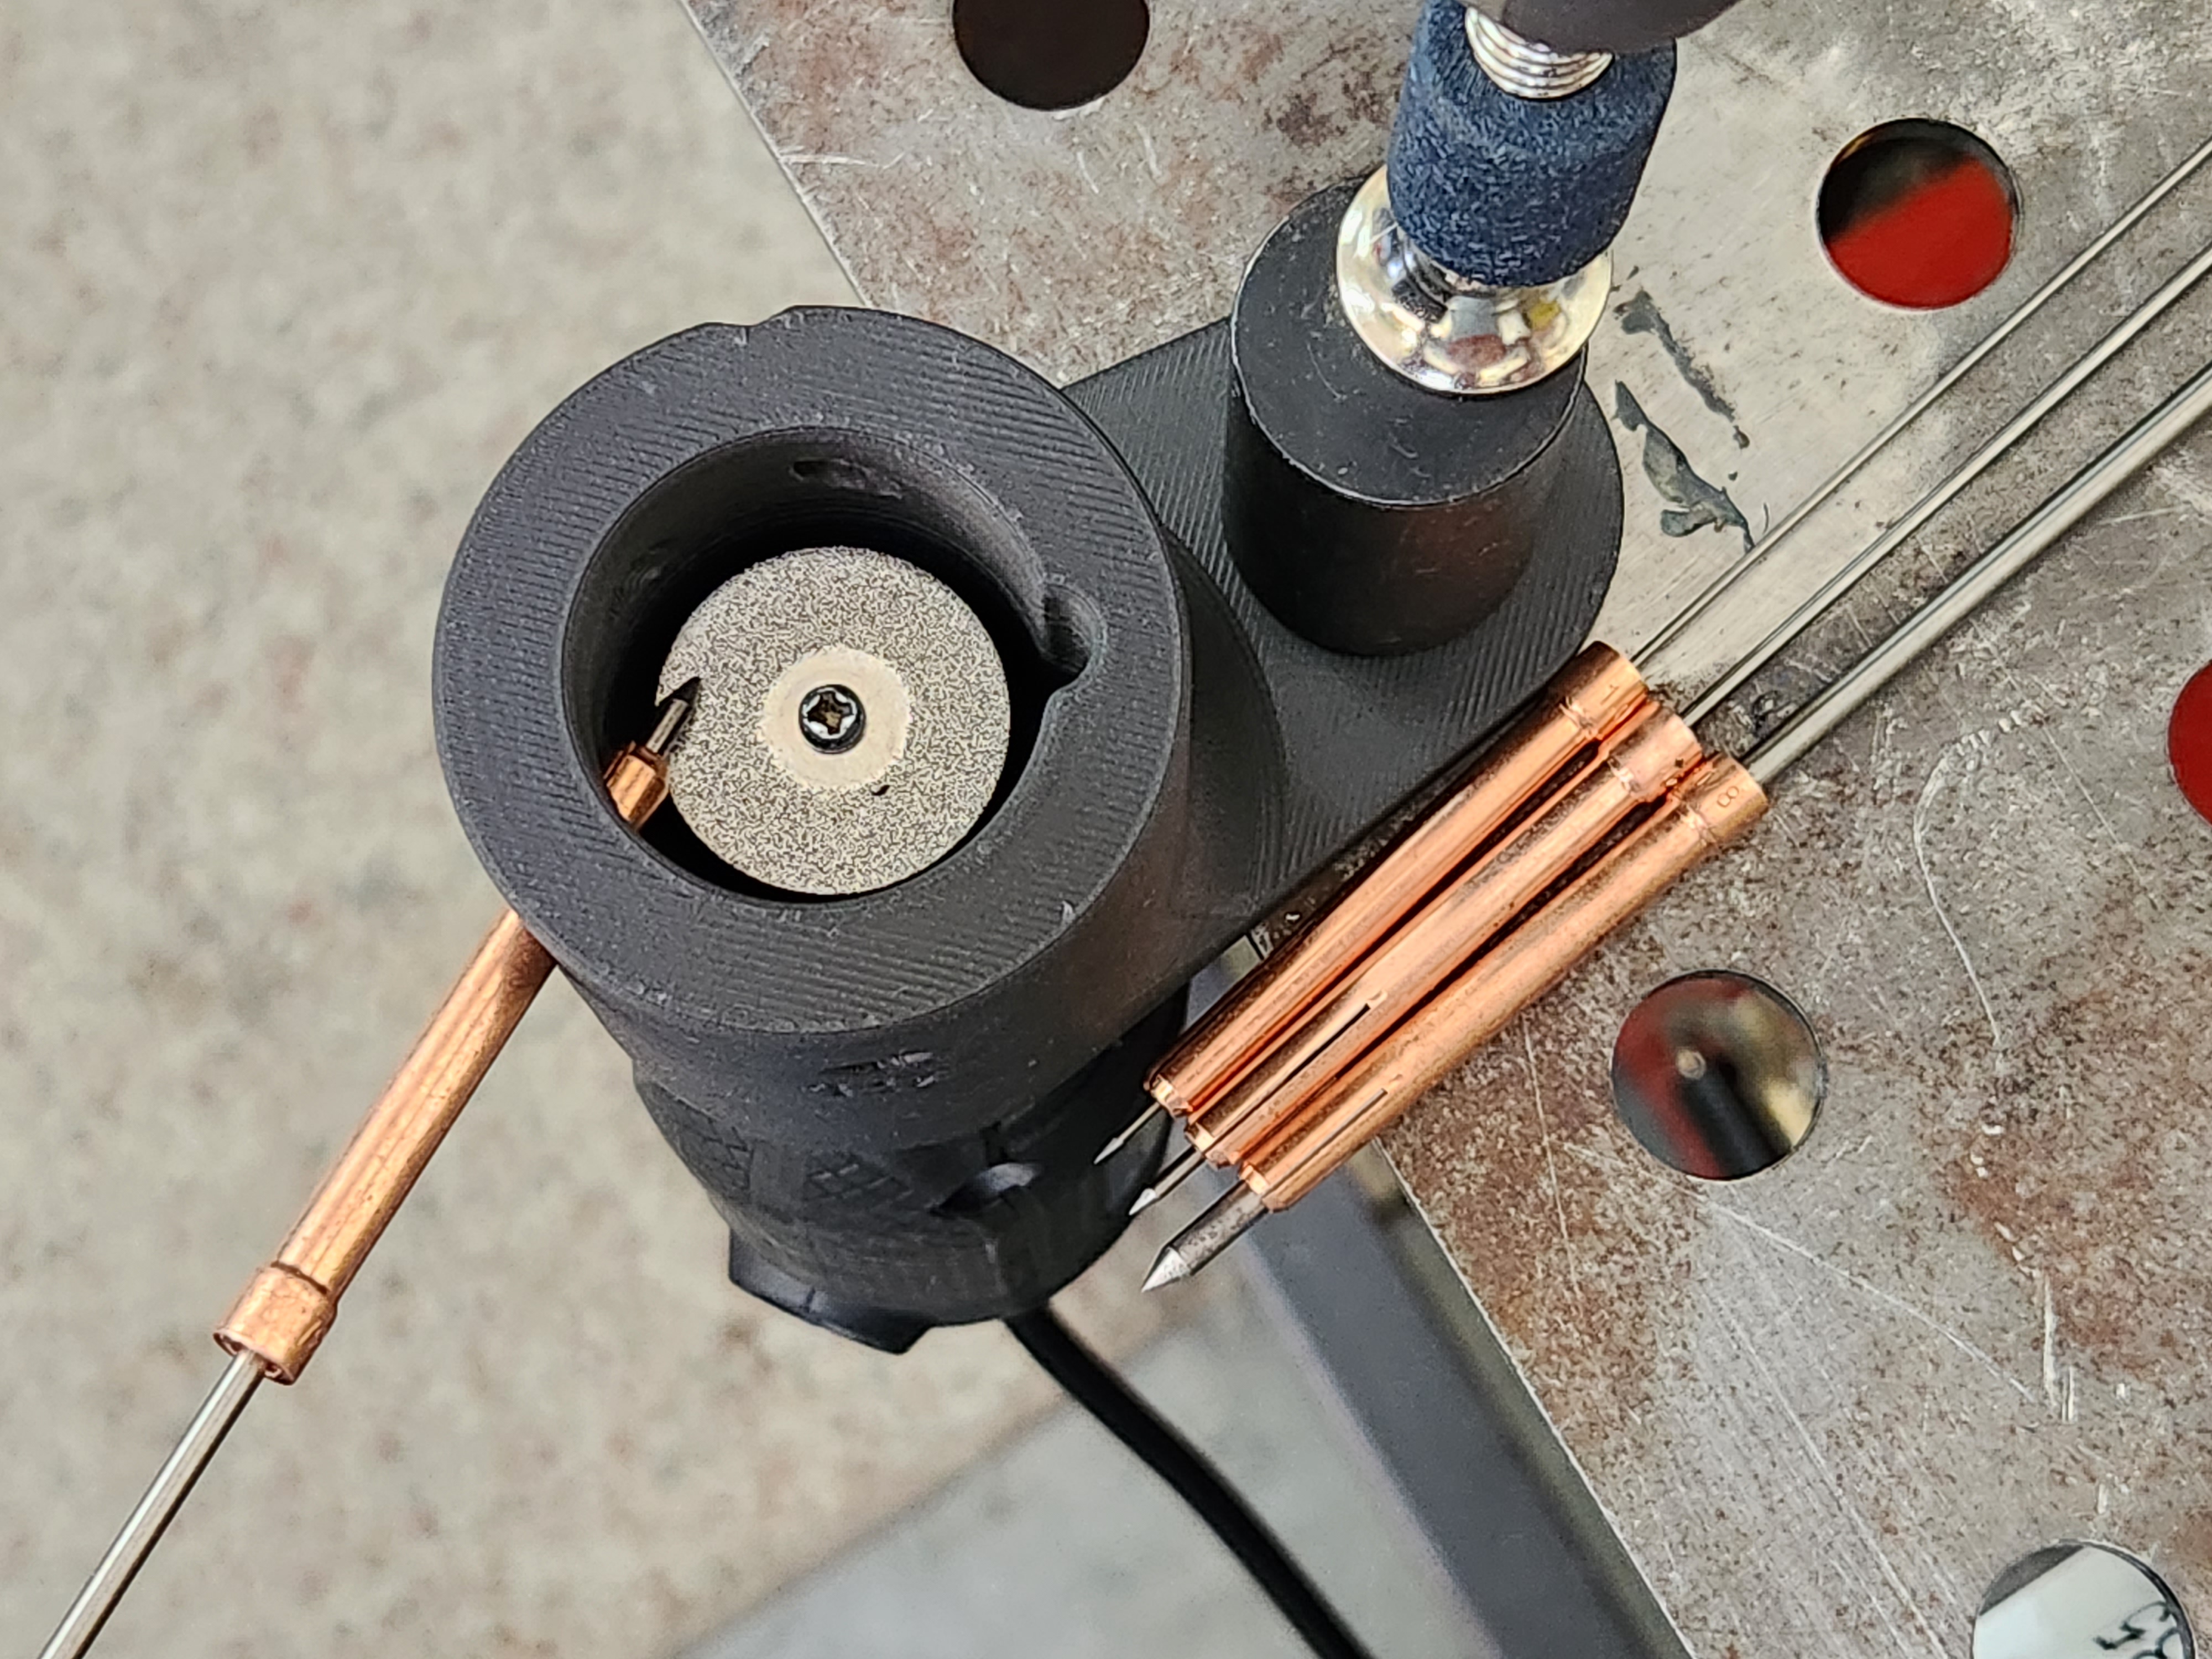 Tungsten grinder redesigned